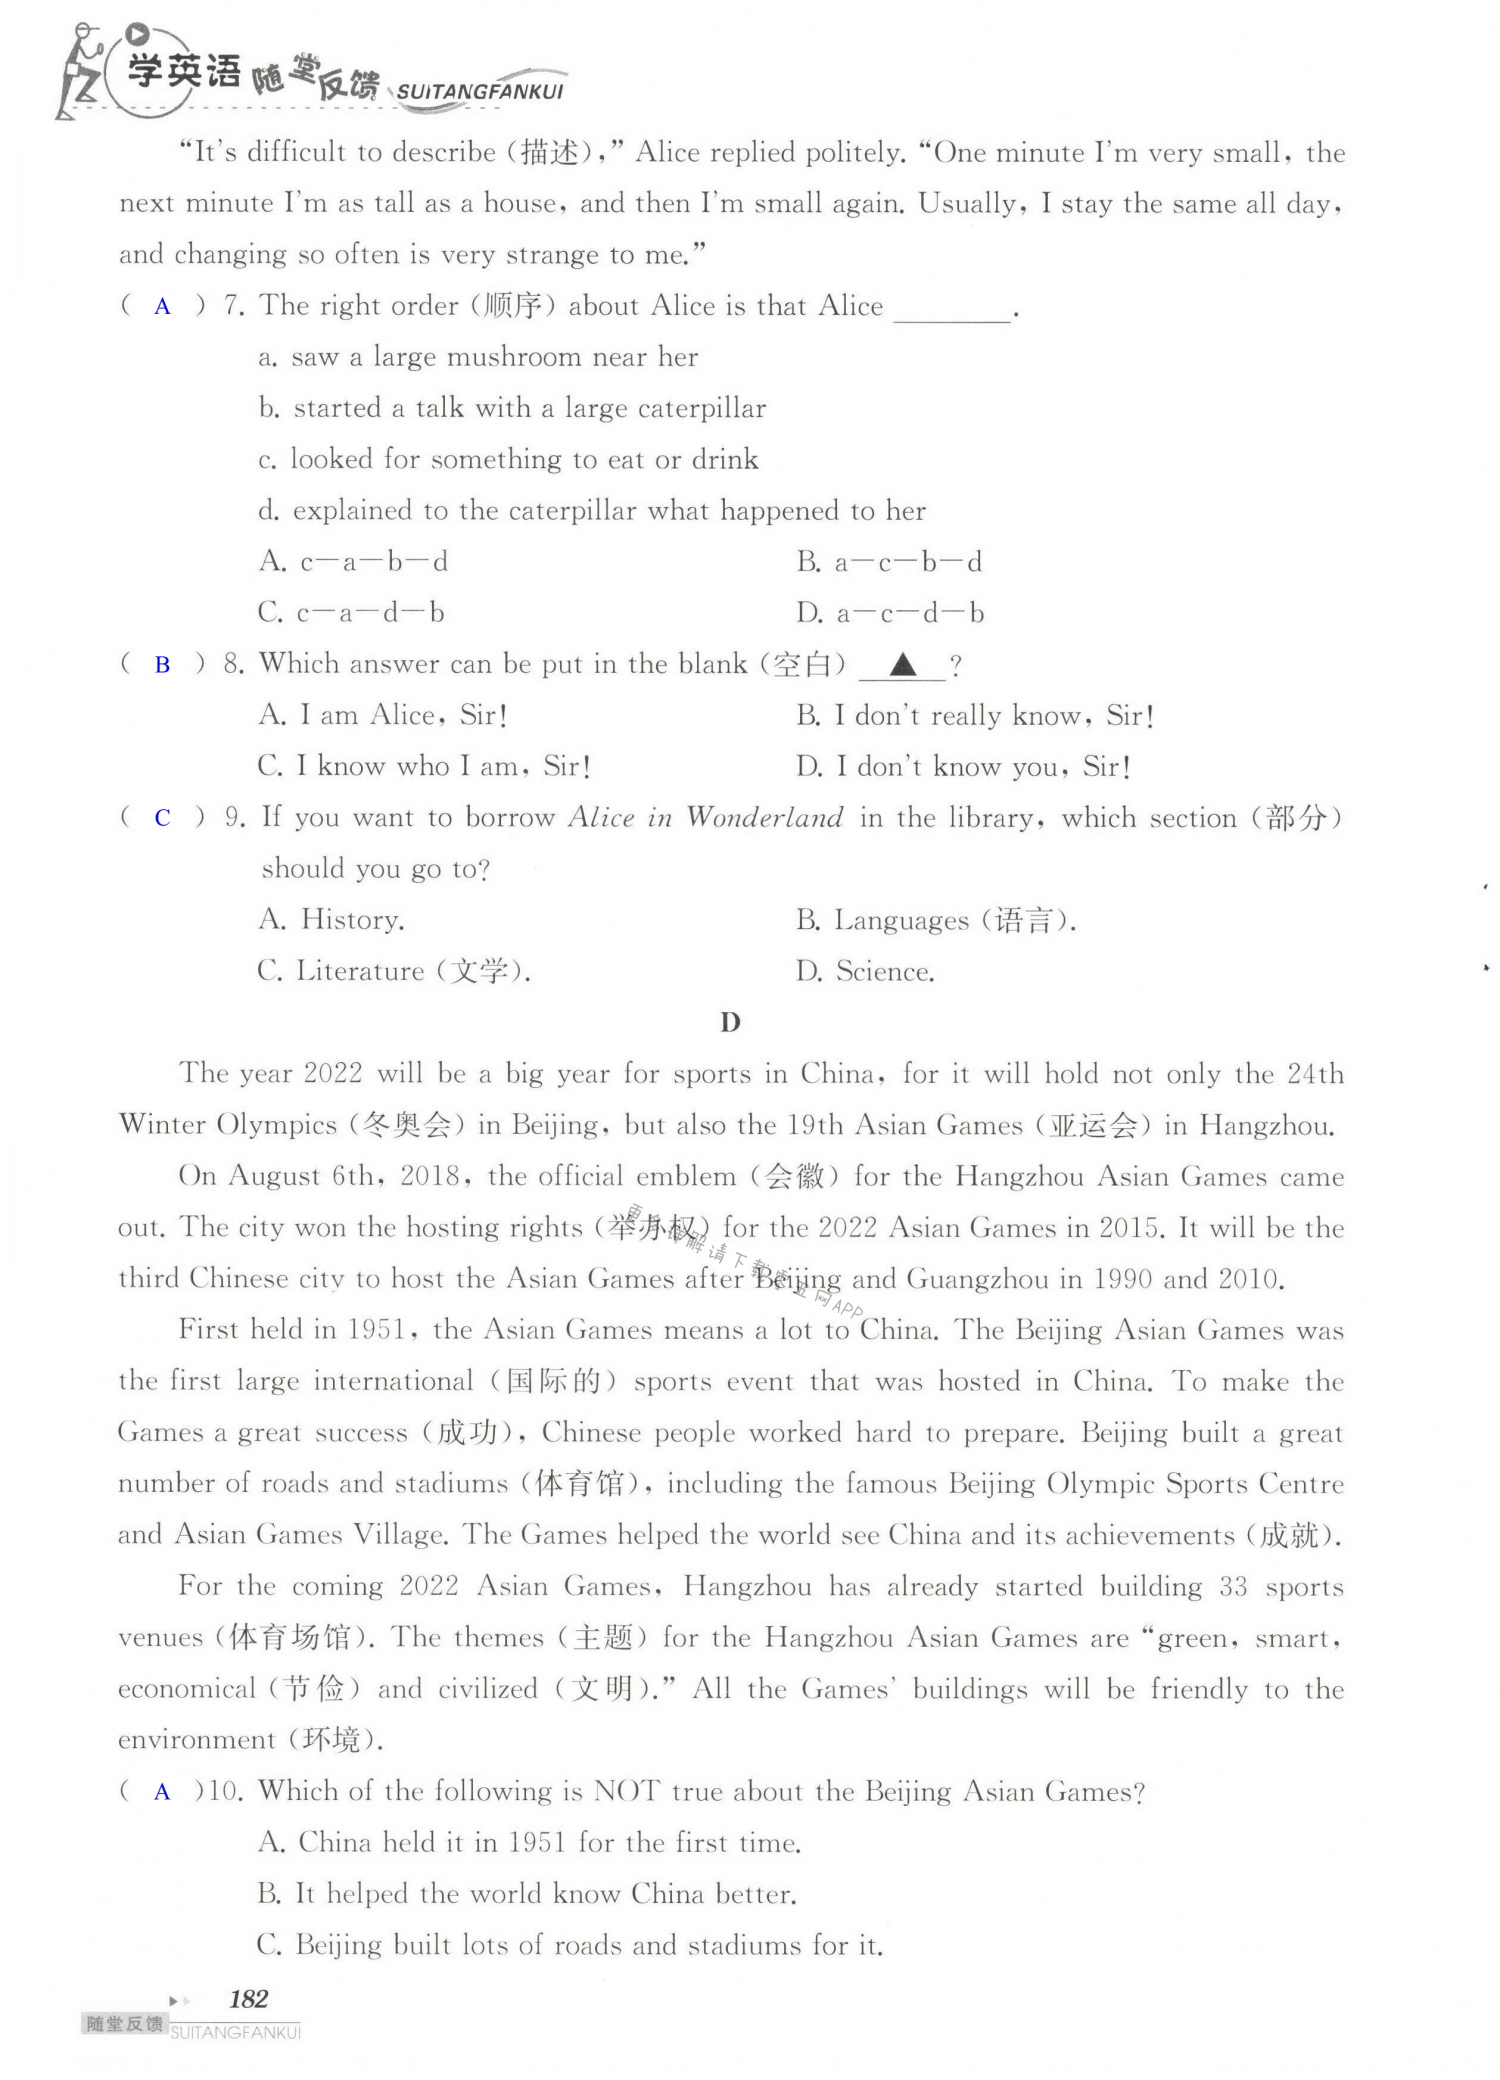 单元综合测试卷  Test for Unit 6 of 7B - 第182页